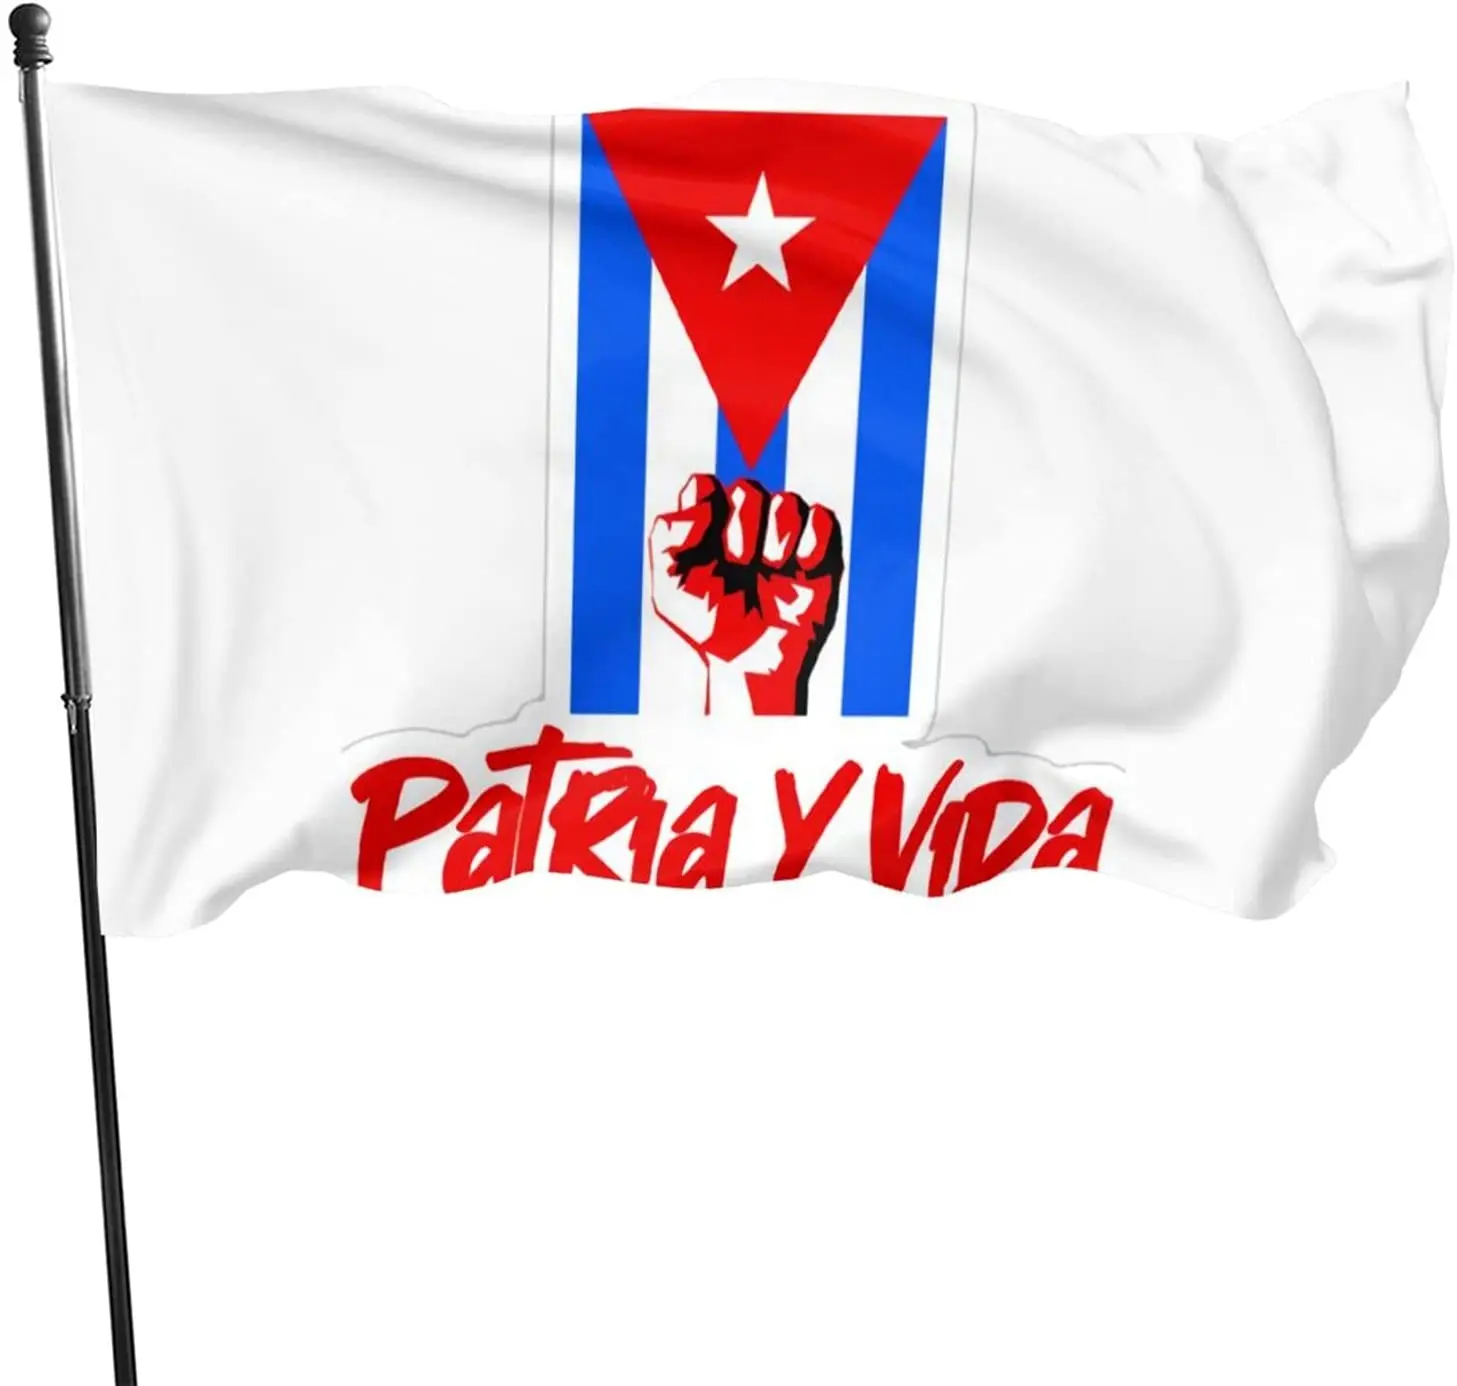 Kép /Patria-y-vida-viva-cuba-libre-zászló-3x5-ft-ellenálló-1-132544-thumb.jpg